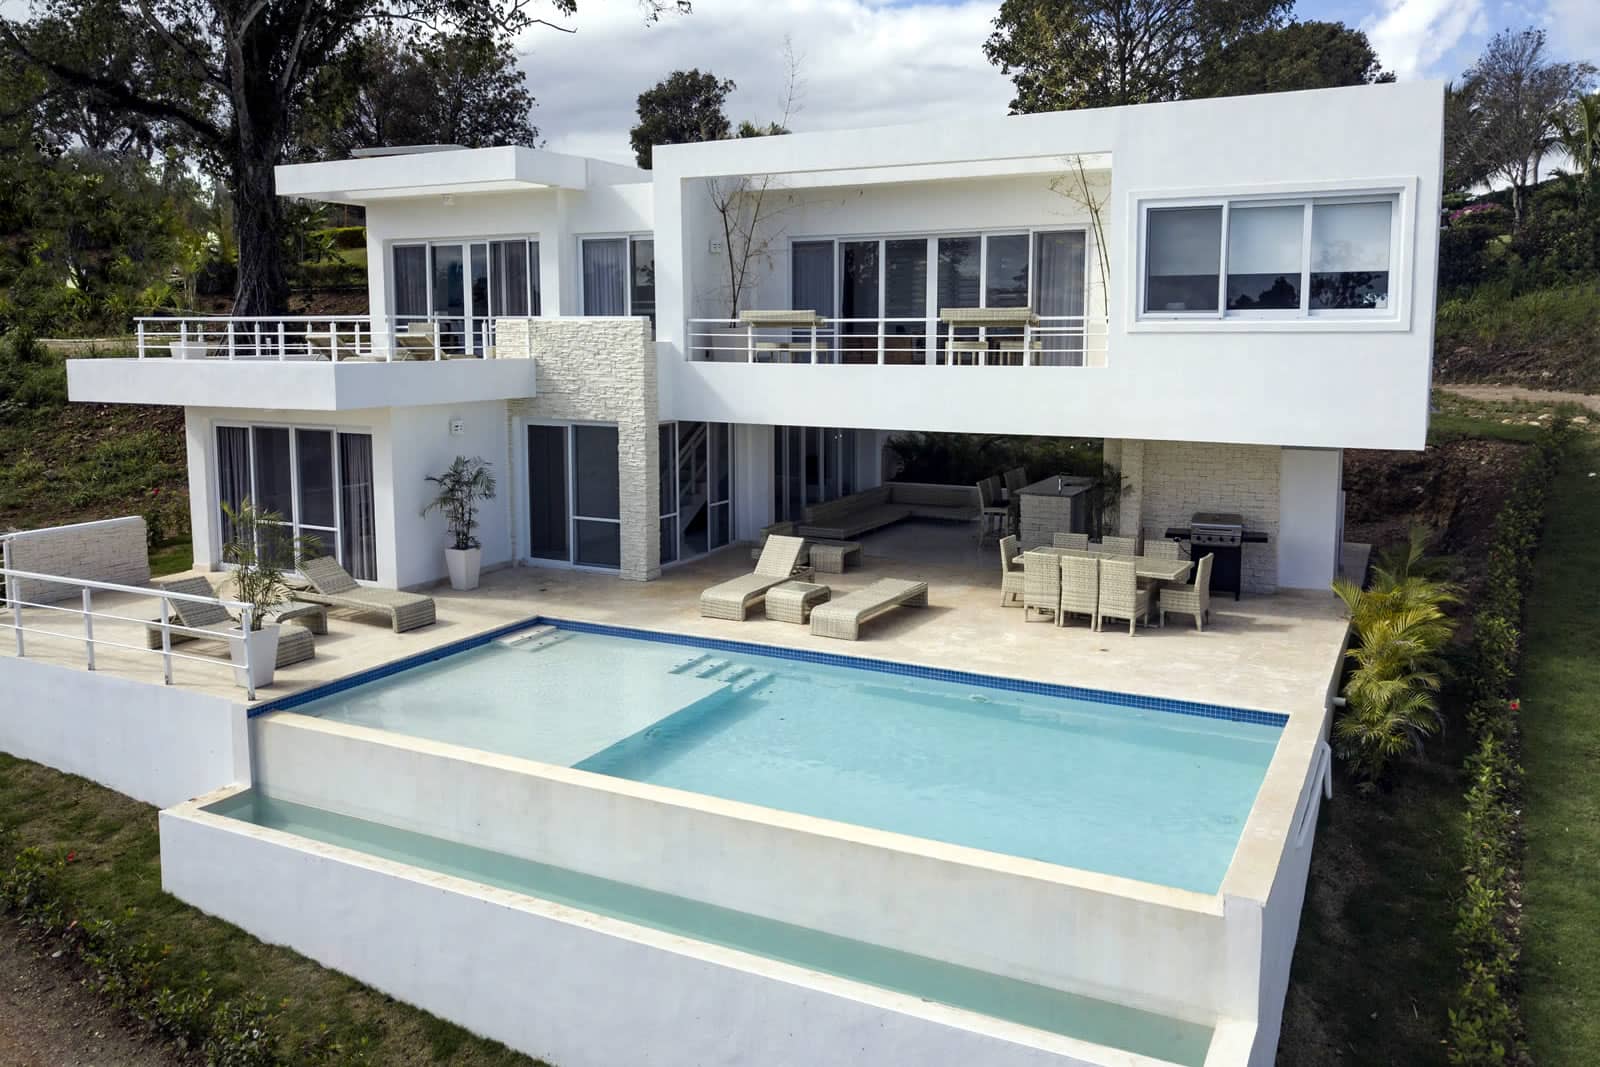 3 Bedroom Villas For Sale Casa Linda Sosuacabarete Dominican